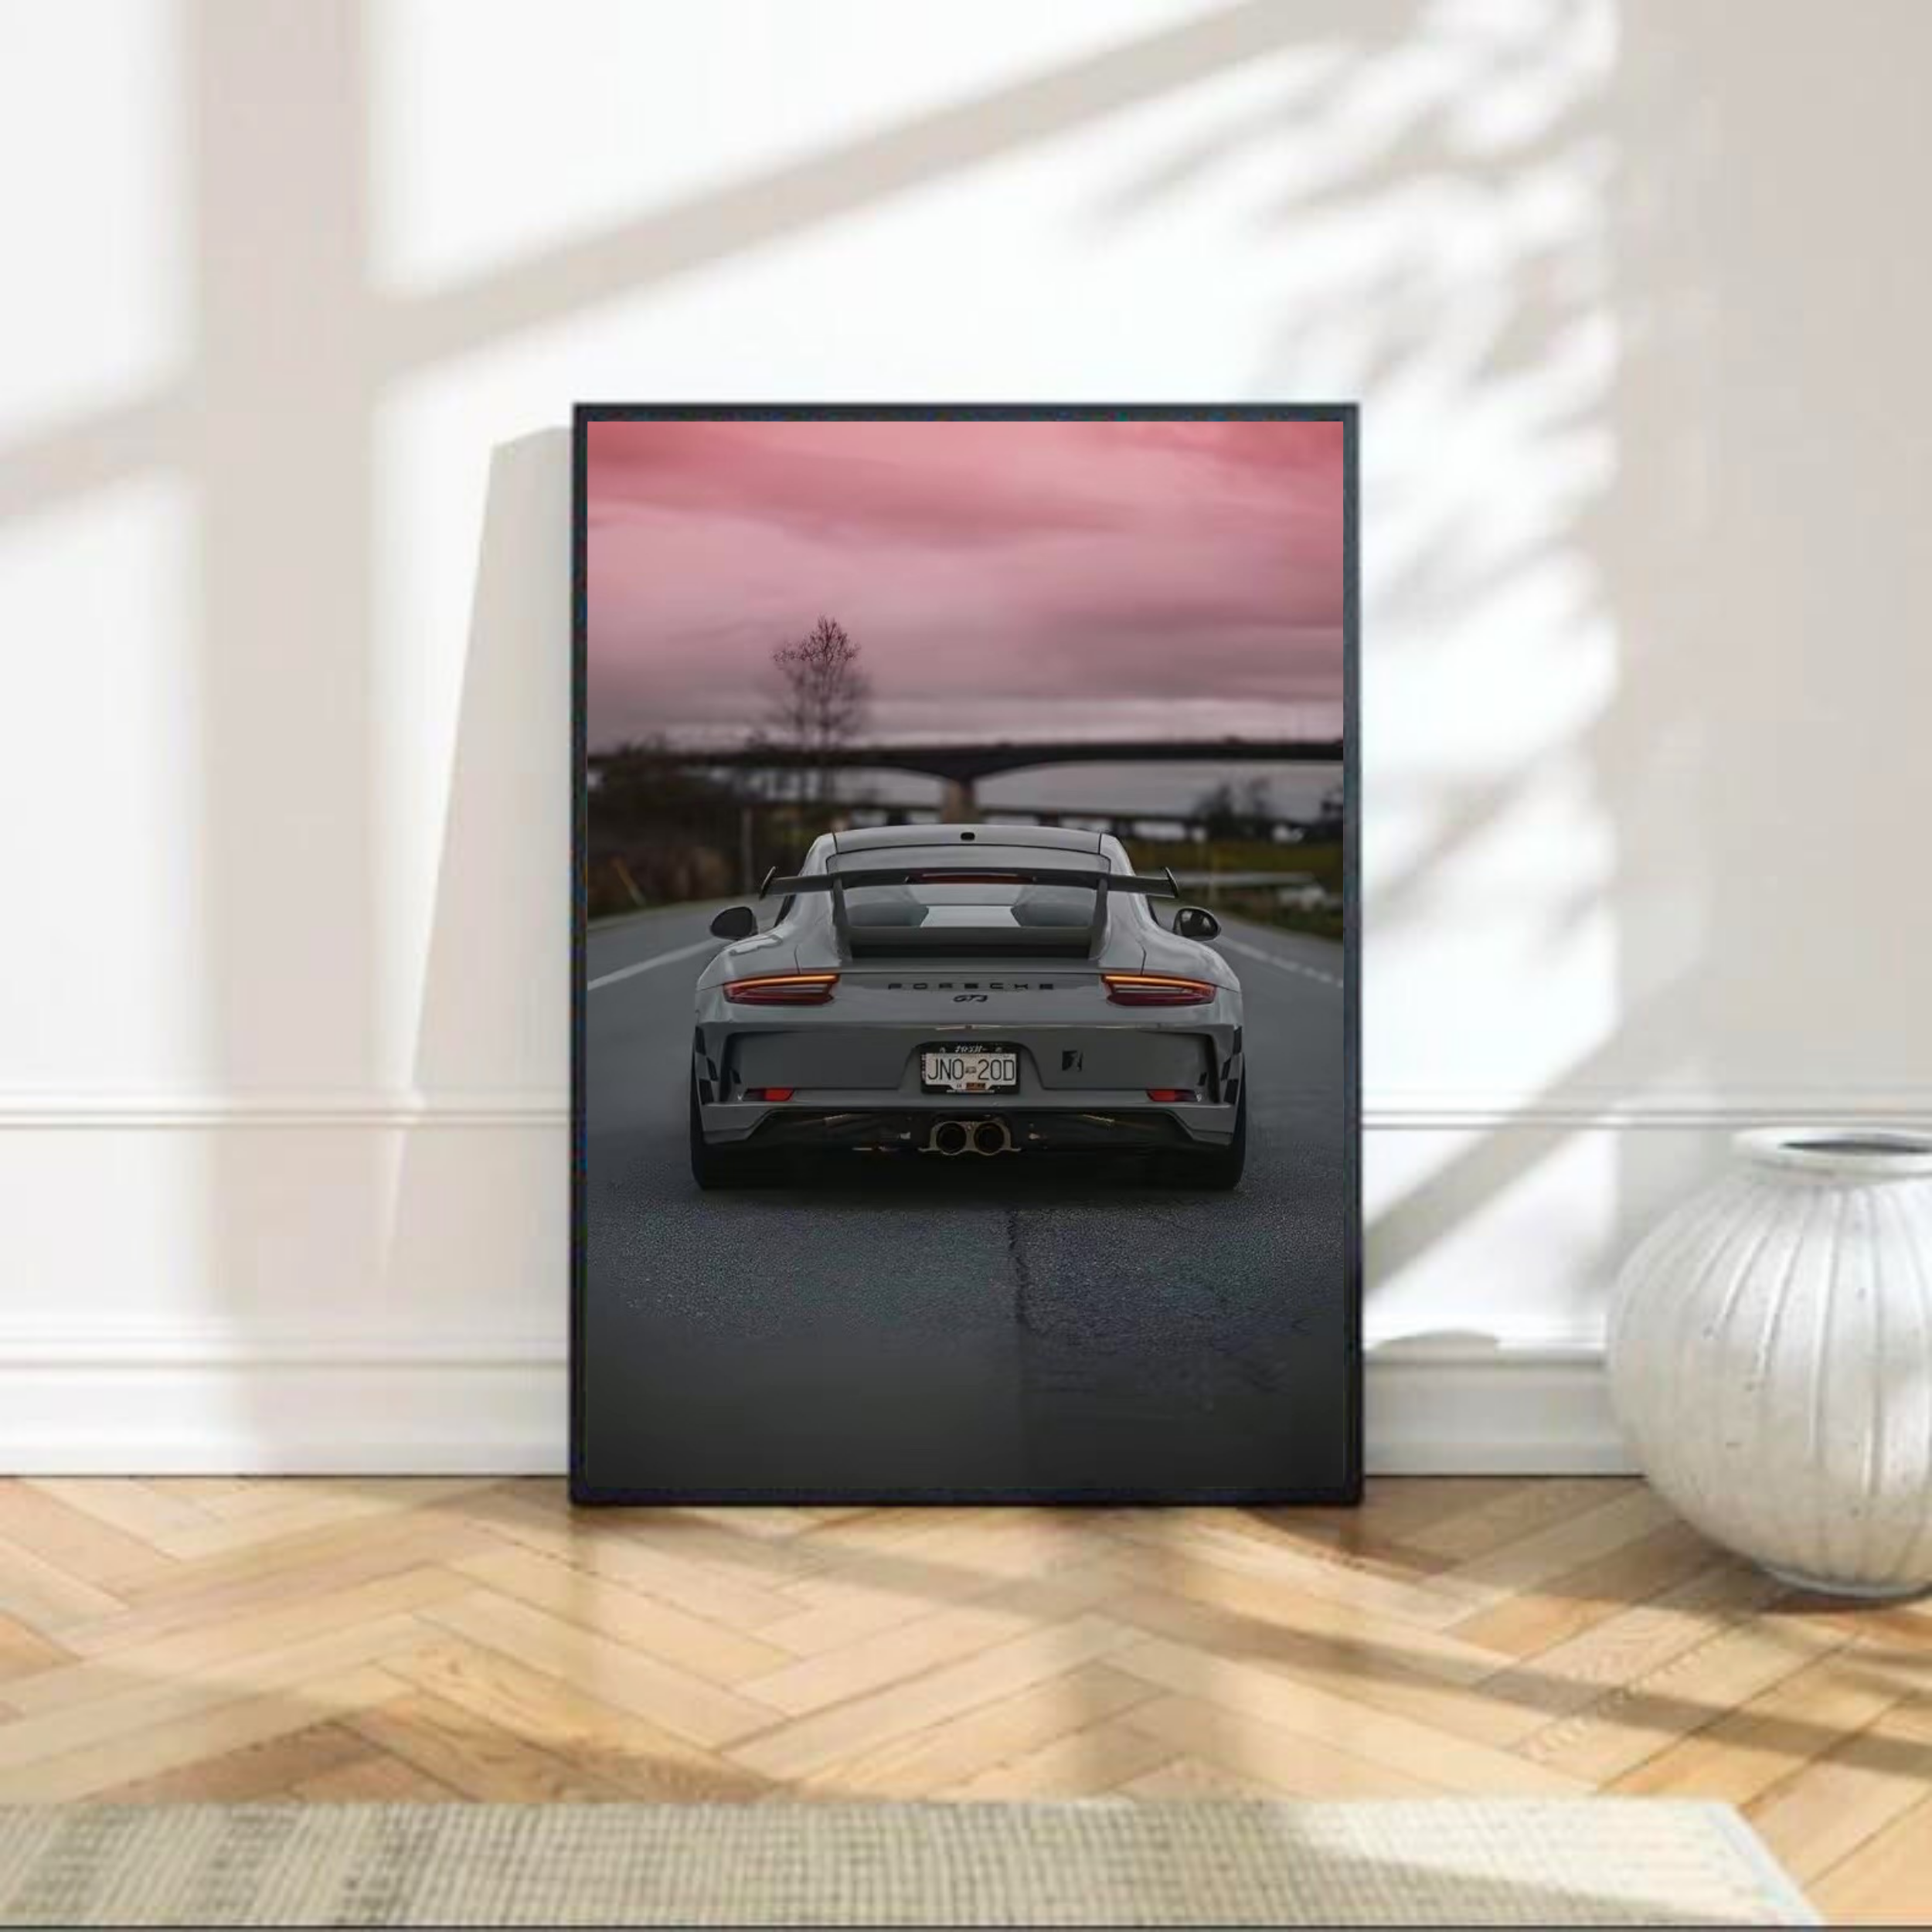 פורשה 911 GT3